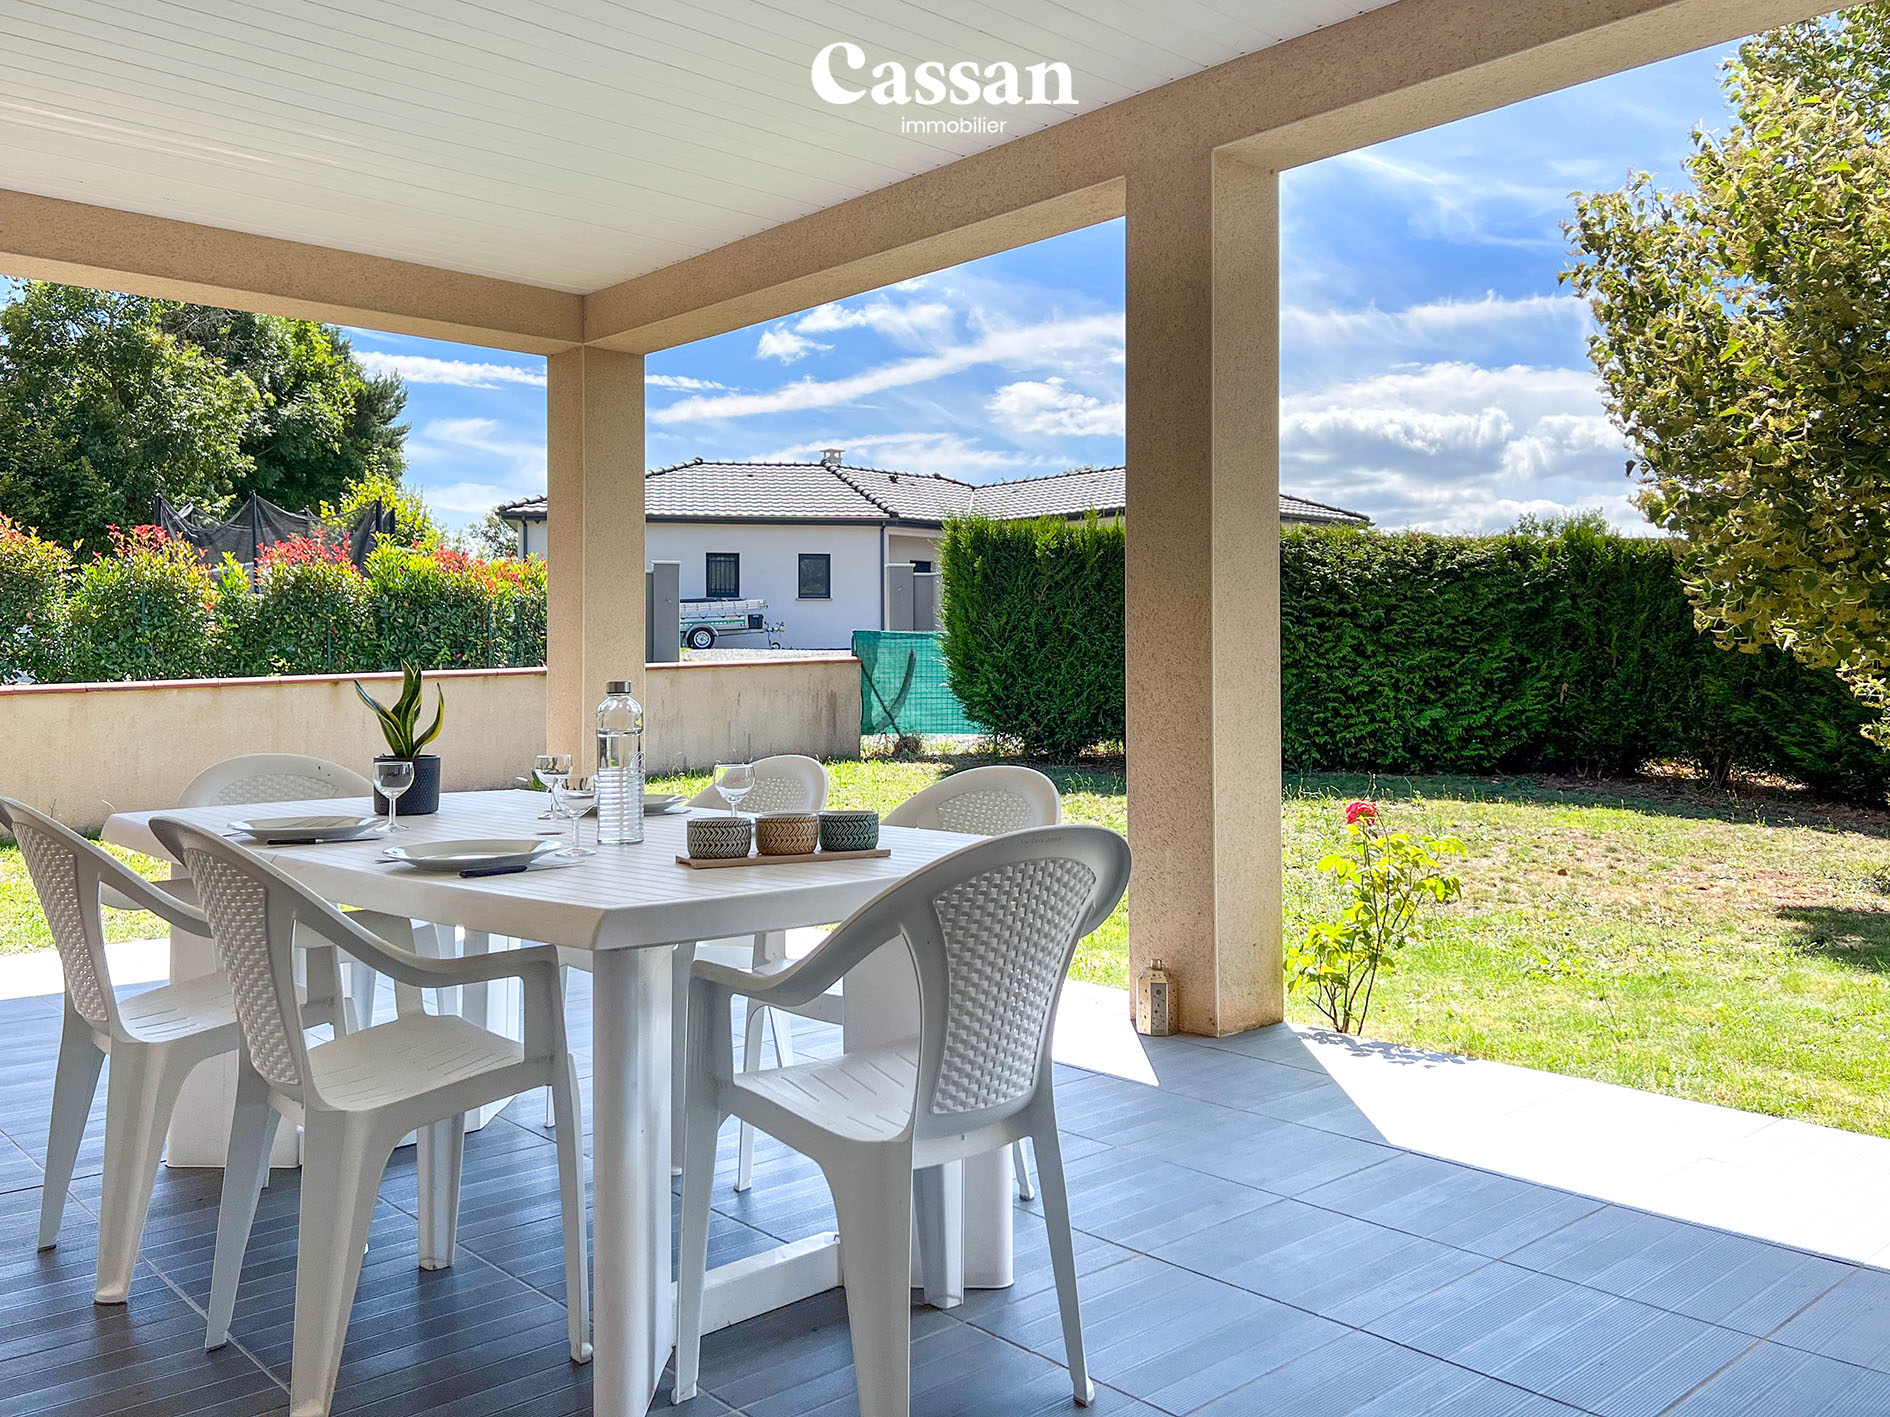 Terrasse maison à vendre Prunet Cassan immobilier